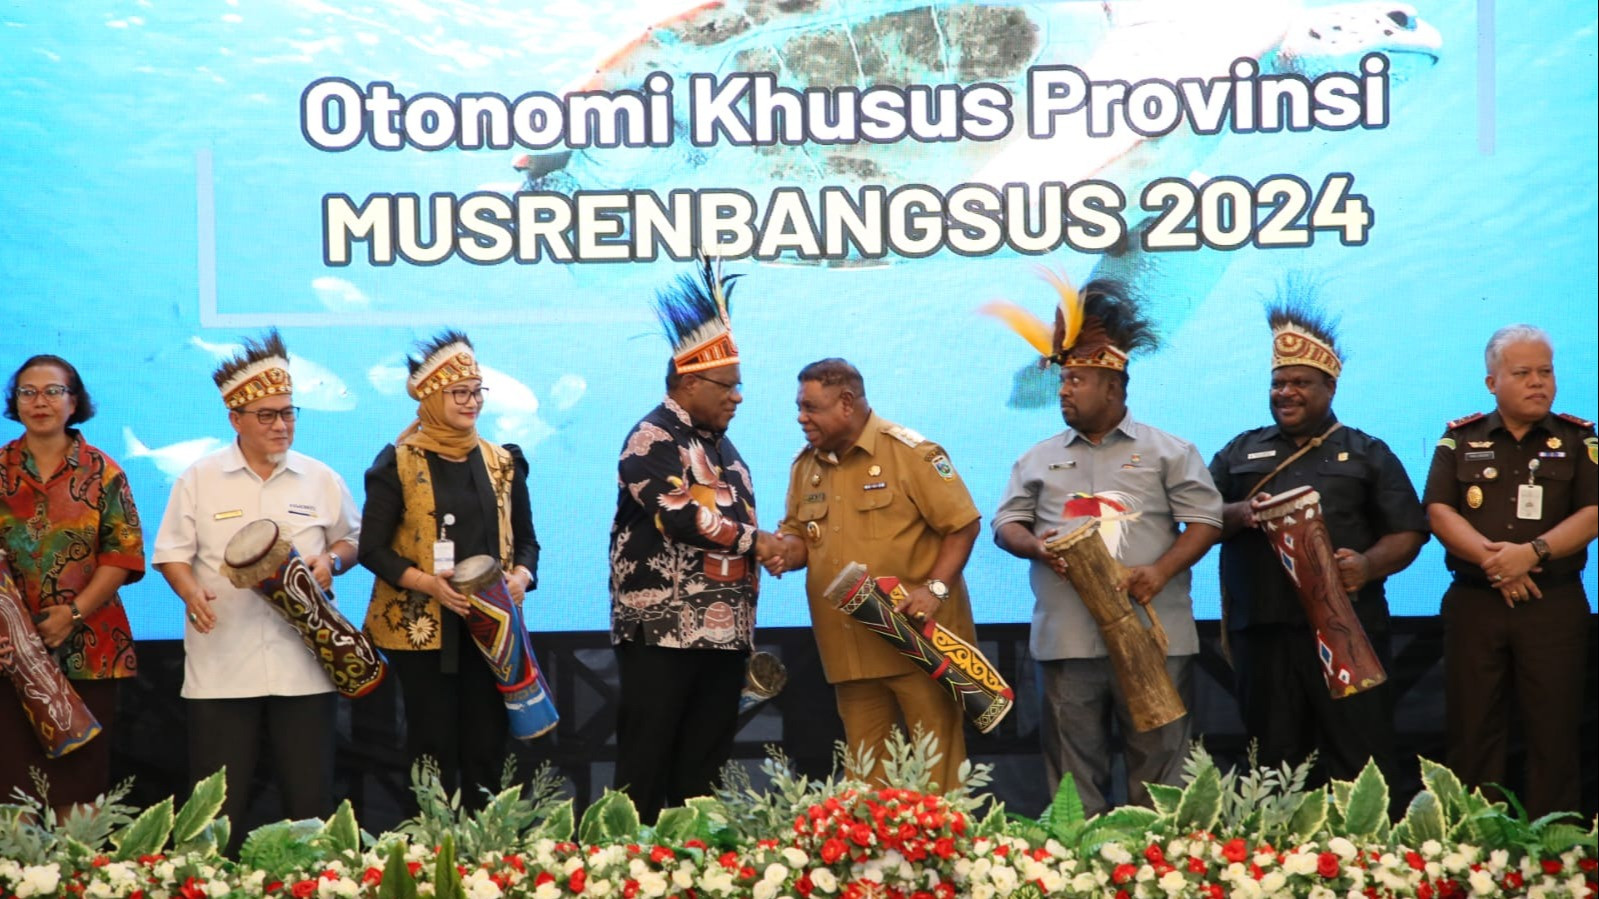 Wakil Menteri Dalam Negeri (Wamendagri) John Wempi Wetipo mengingatkan Pemerintah Provinsi (Pemprov) Papua Barat agar menyukseskan Pilkada Serentak 2024.